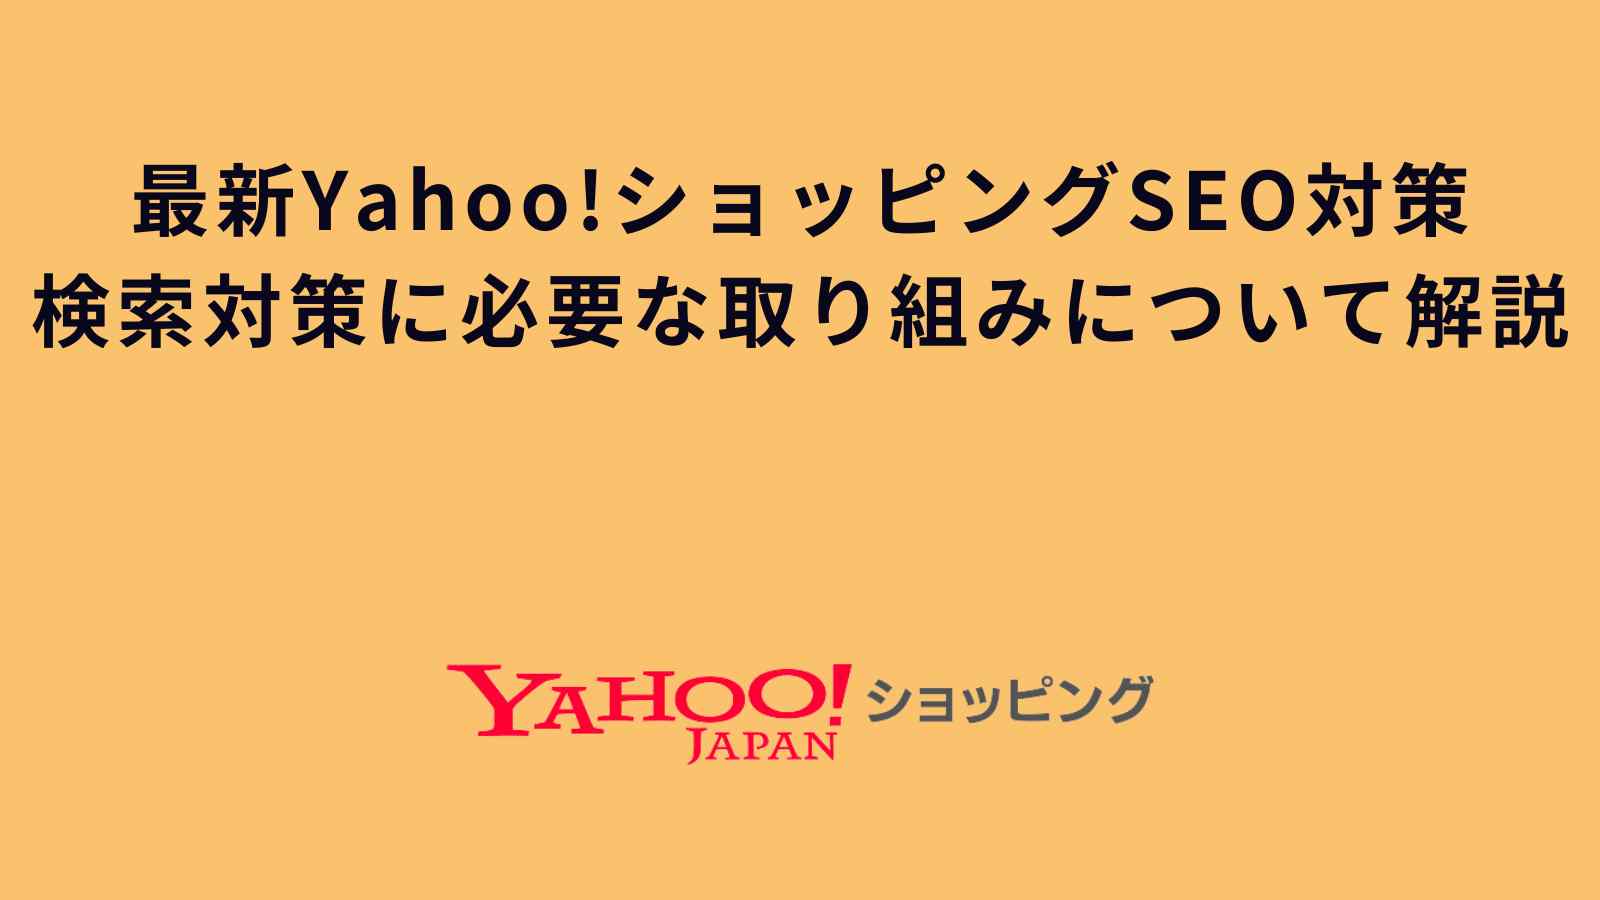 最新Yahoo!ショッピングSEO対策!検索対策に必要な取り組みについて解説